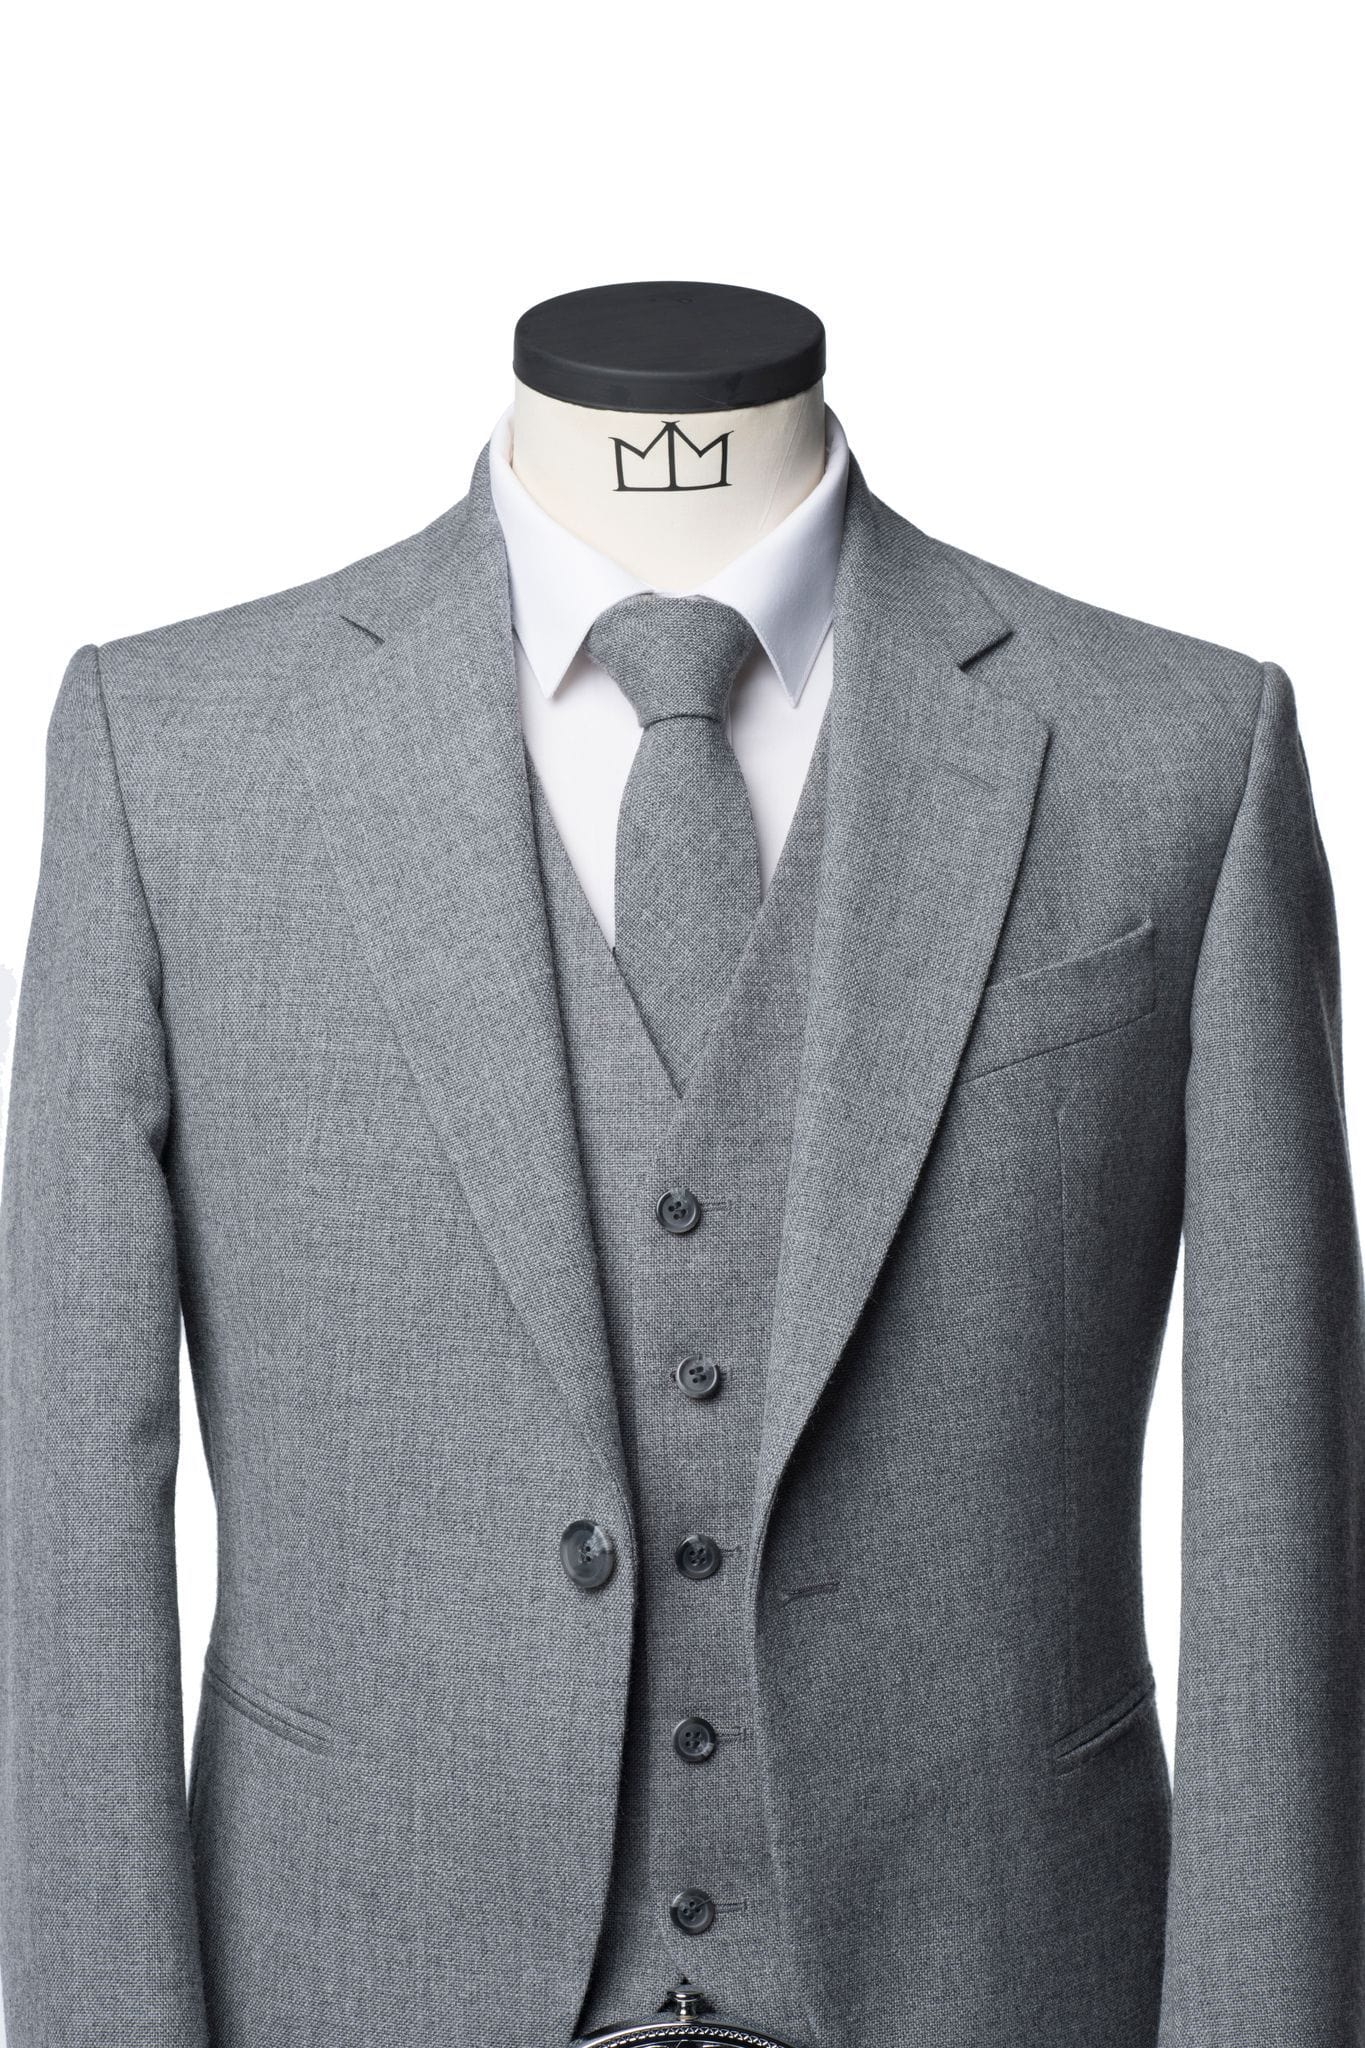 Lomond Grey Tweed Kilt Jacket and Waistcoat – MacGregor and MacDuff